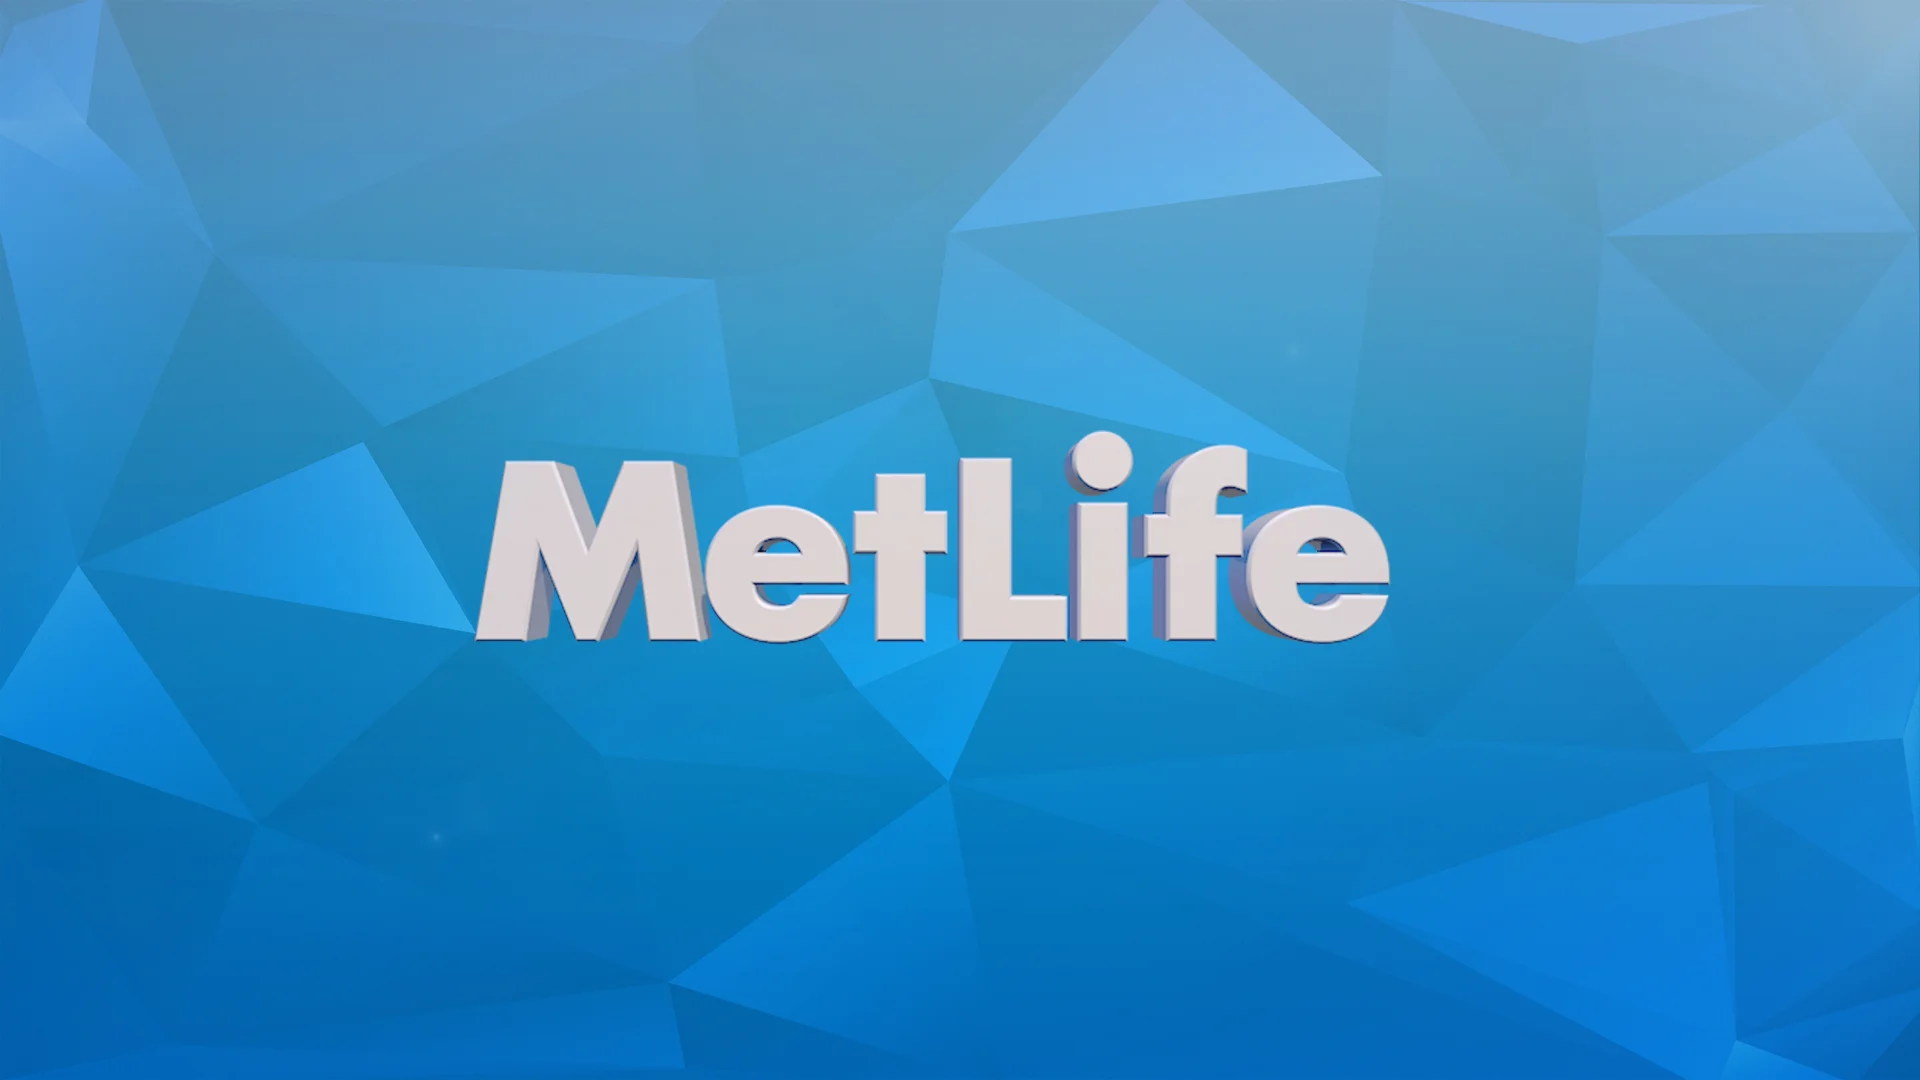 METLIFE. Show develop